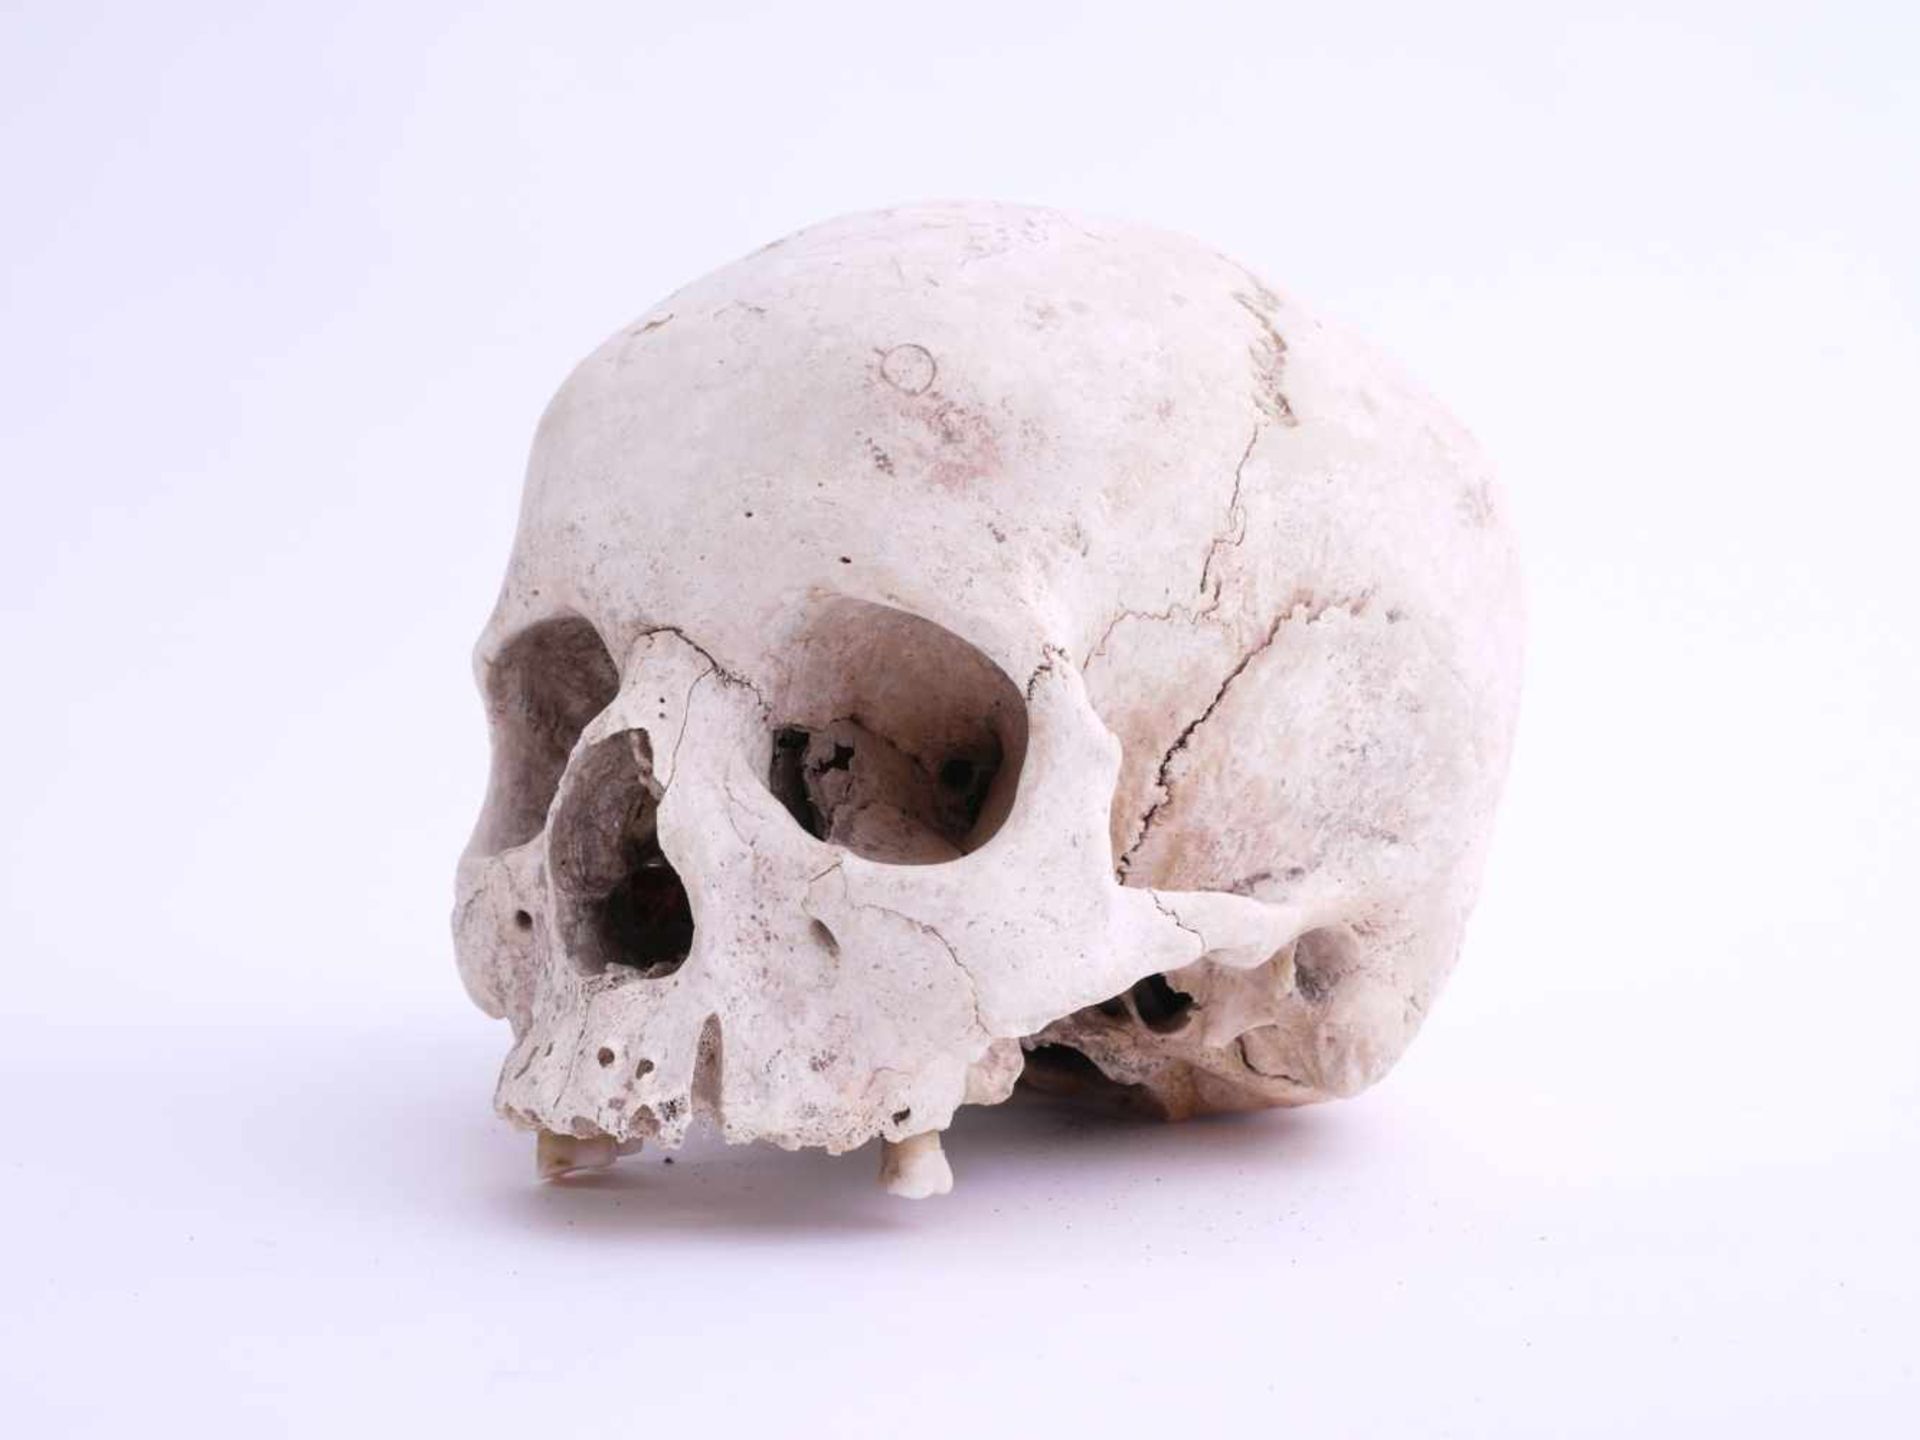 Totenschädel Alter unbestimmtKlar sichtbare Schädelnähte, Unterkiefer fehlend. Drei der hinteren